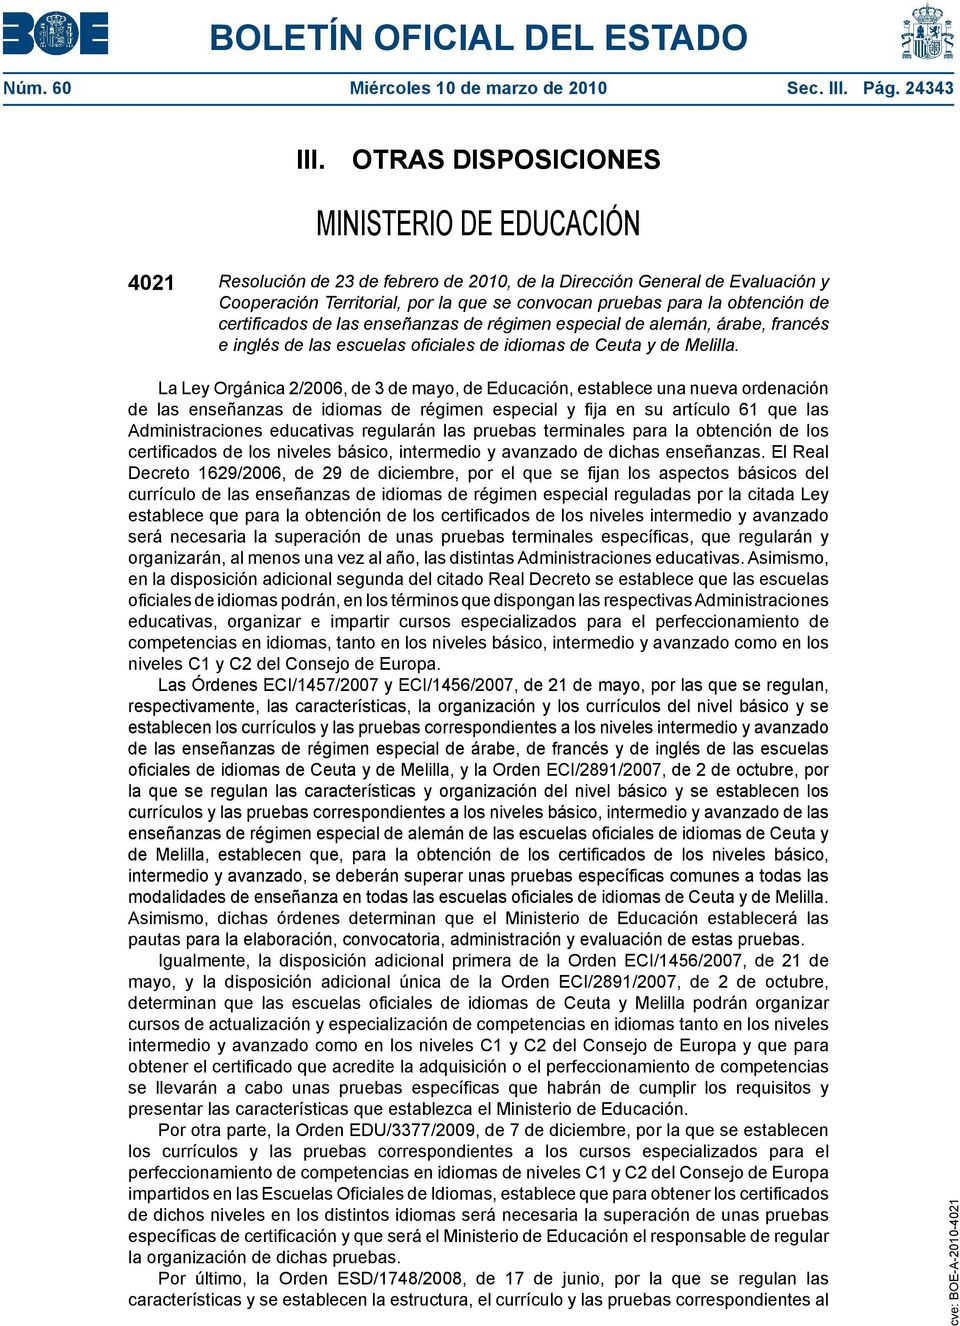 de certificados de las enseñanzas de régimen especial de alemán, árabe, francés e inglés de las escuelas oficiales de idiomas de Ceuta y de Melilla.